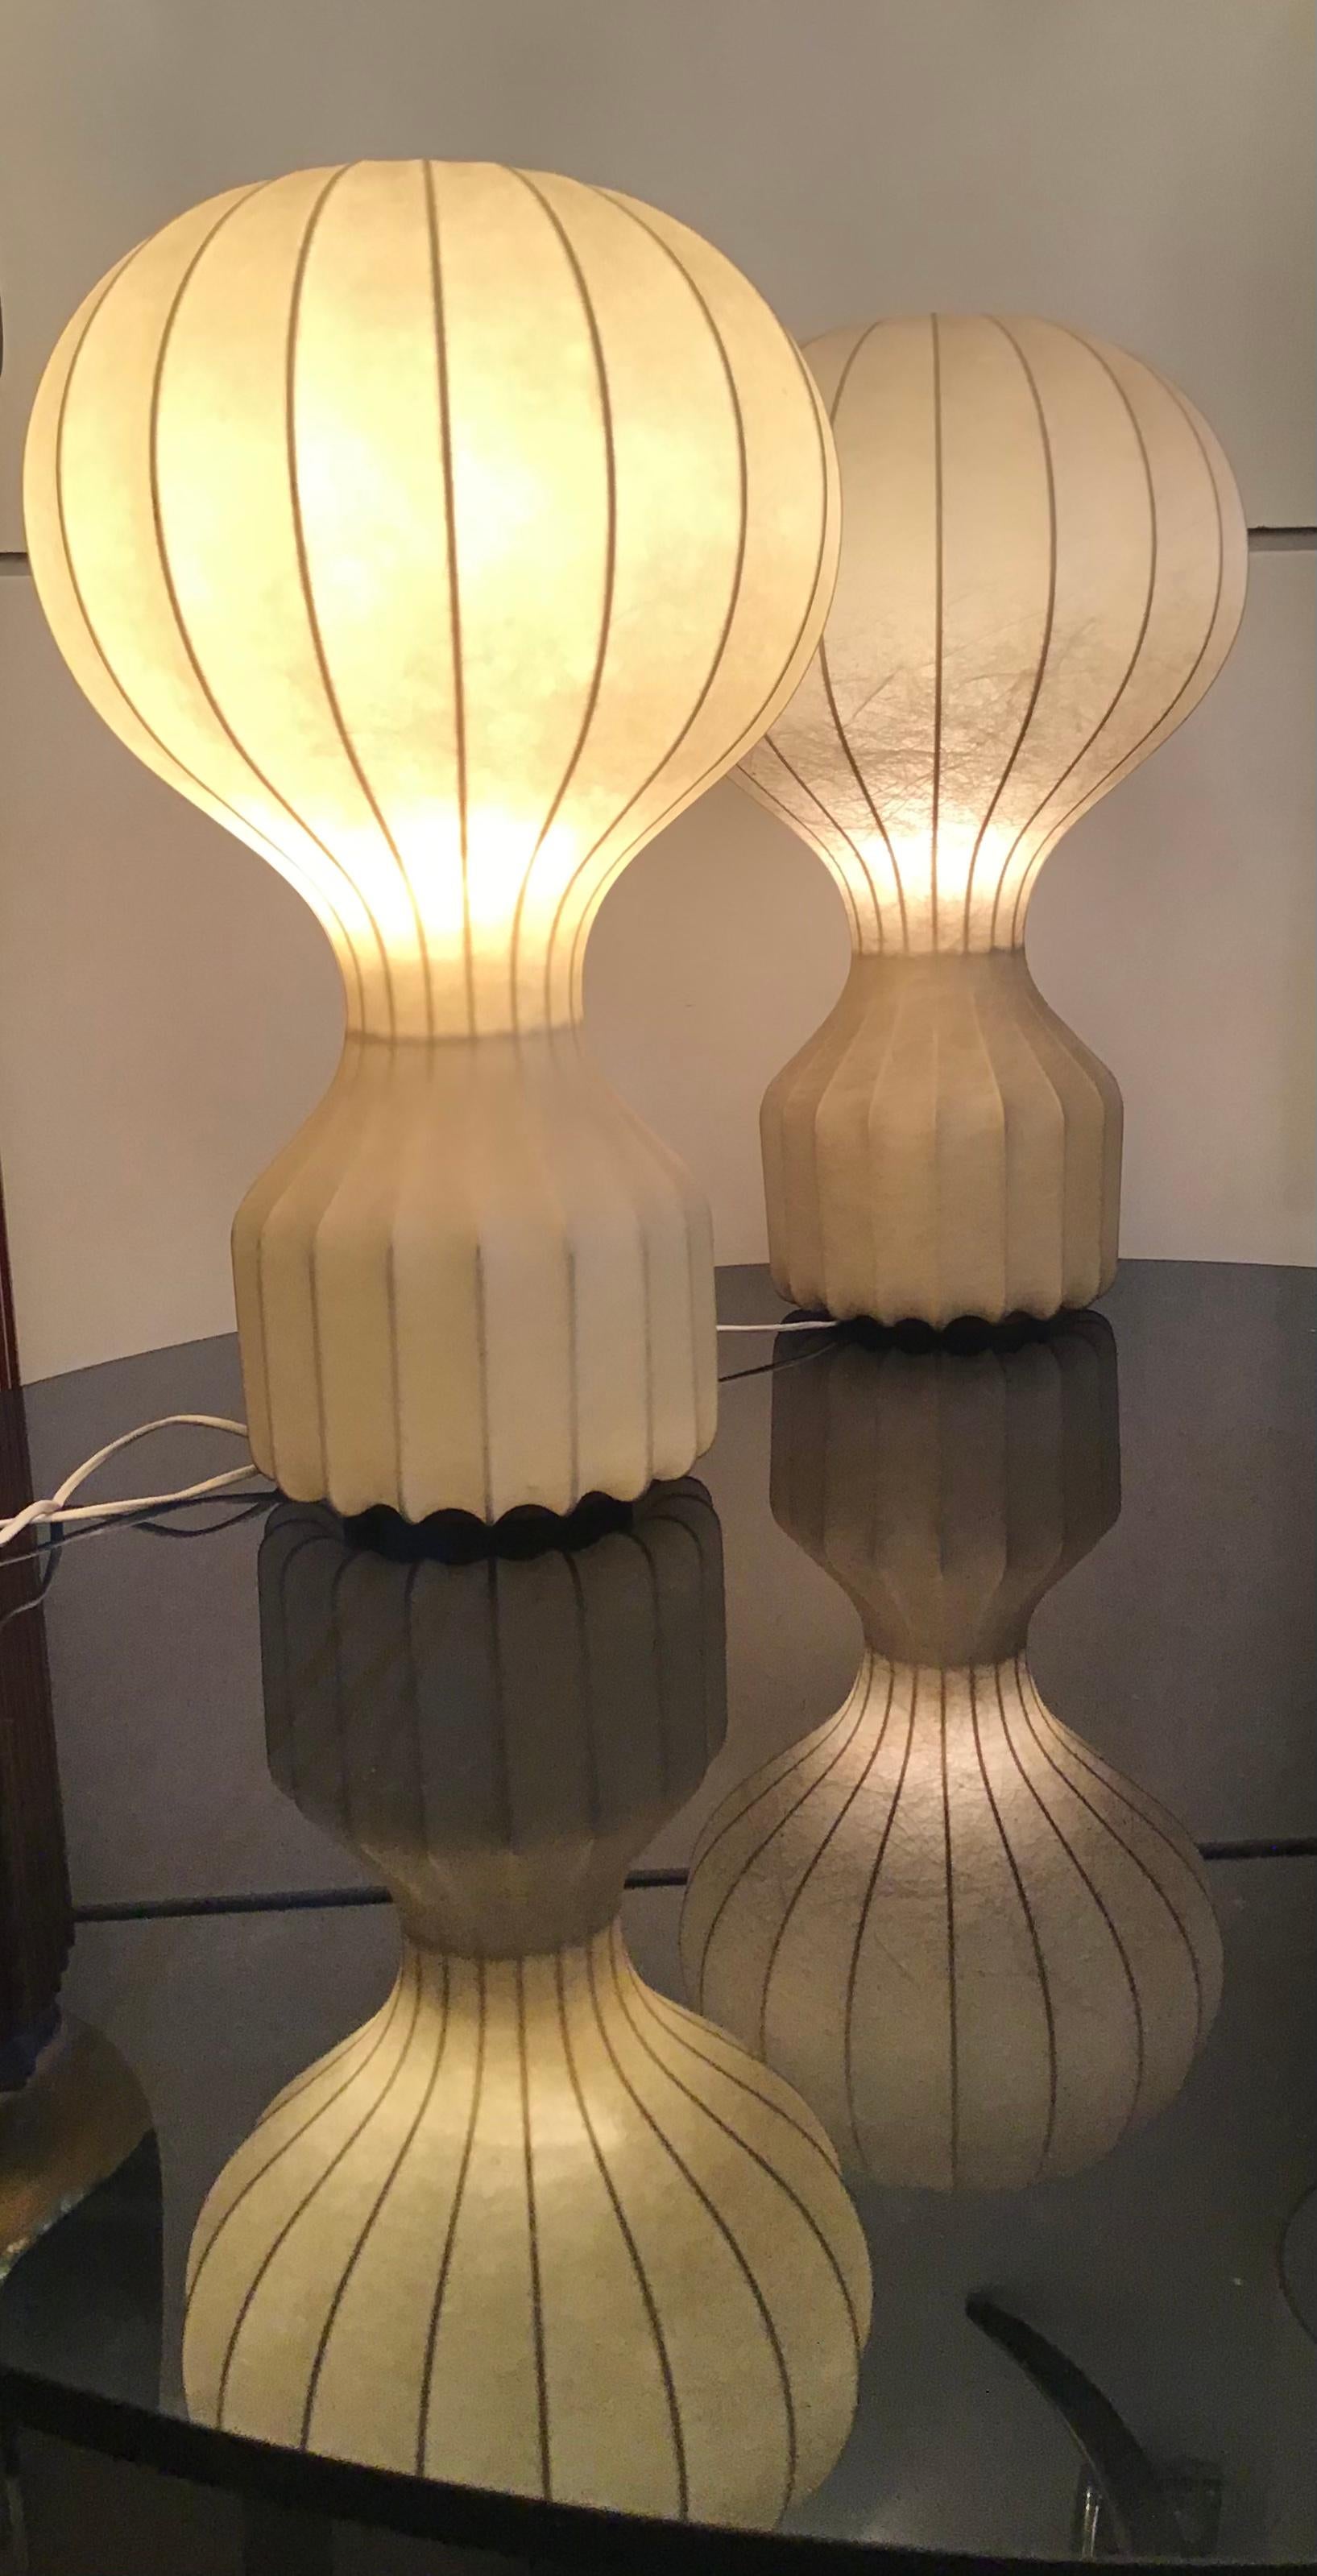 Achille e Pier Giacomo Castiglioni “Gatto “ couple table lamps Cocoon 1960 Italy.